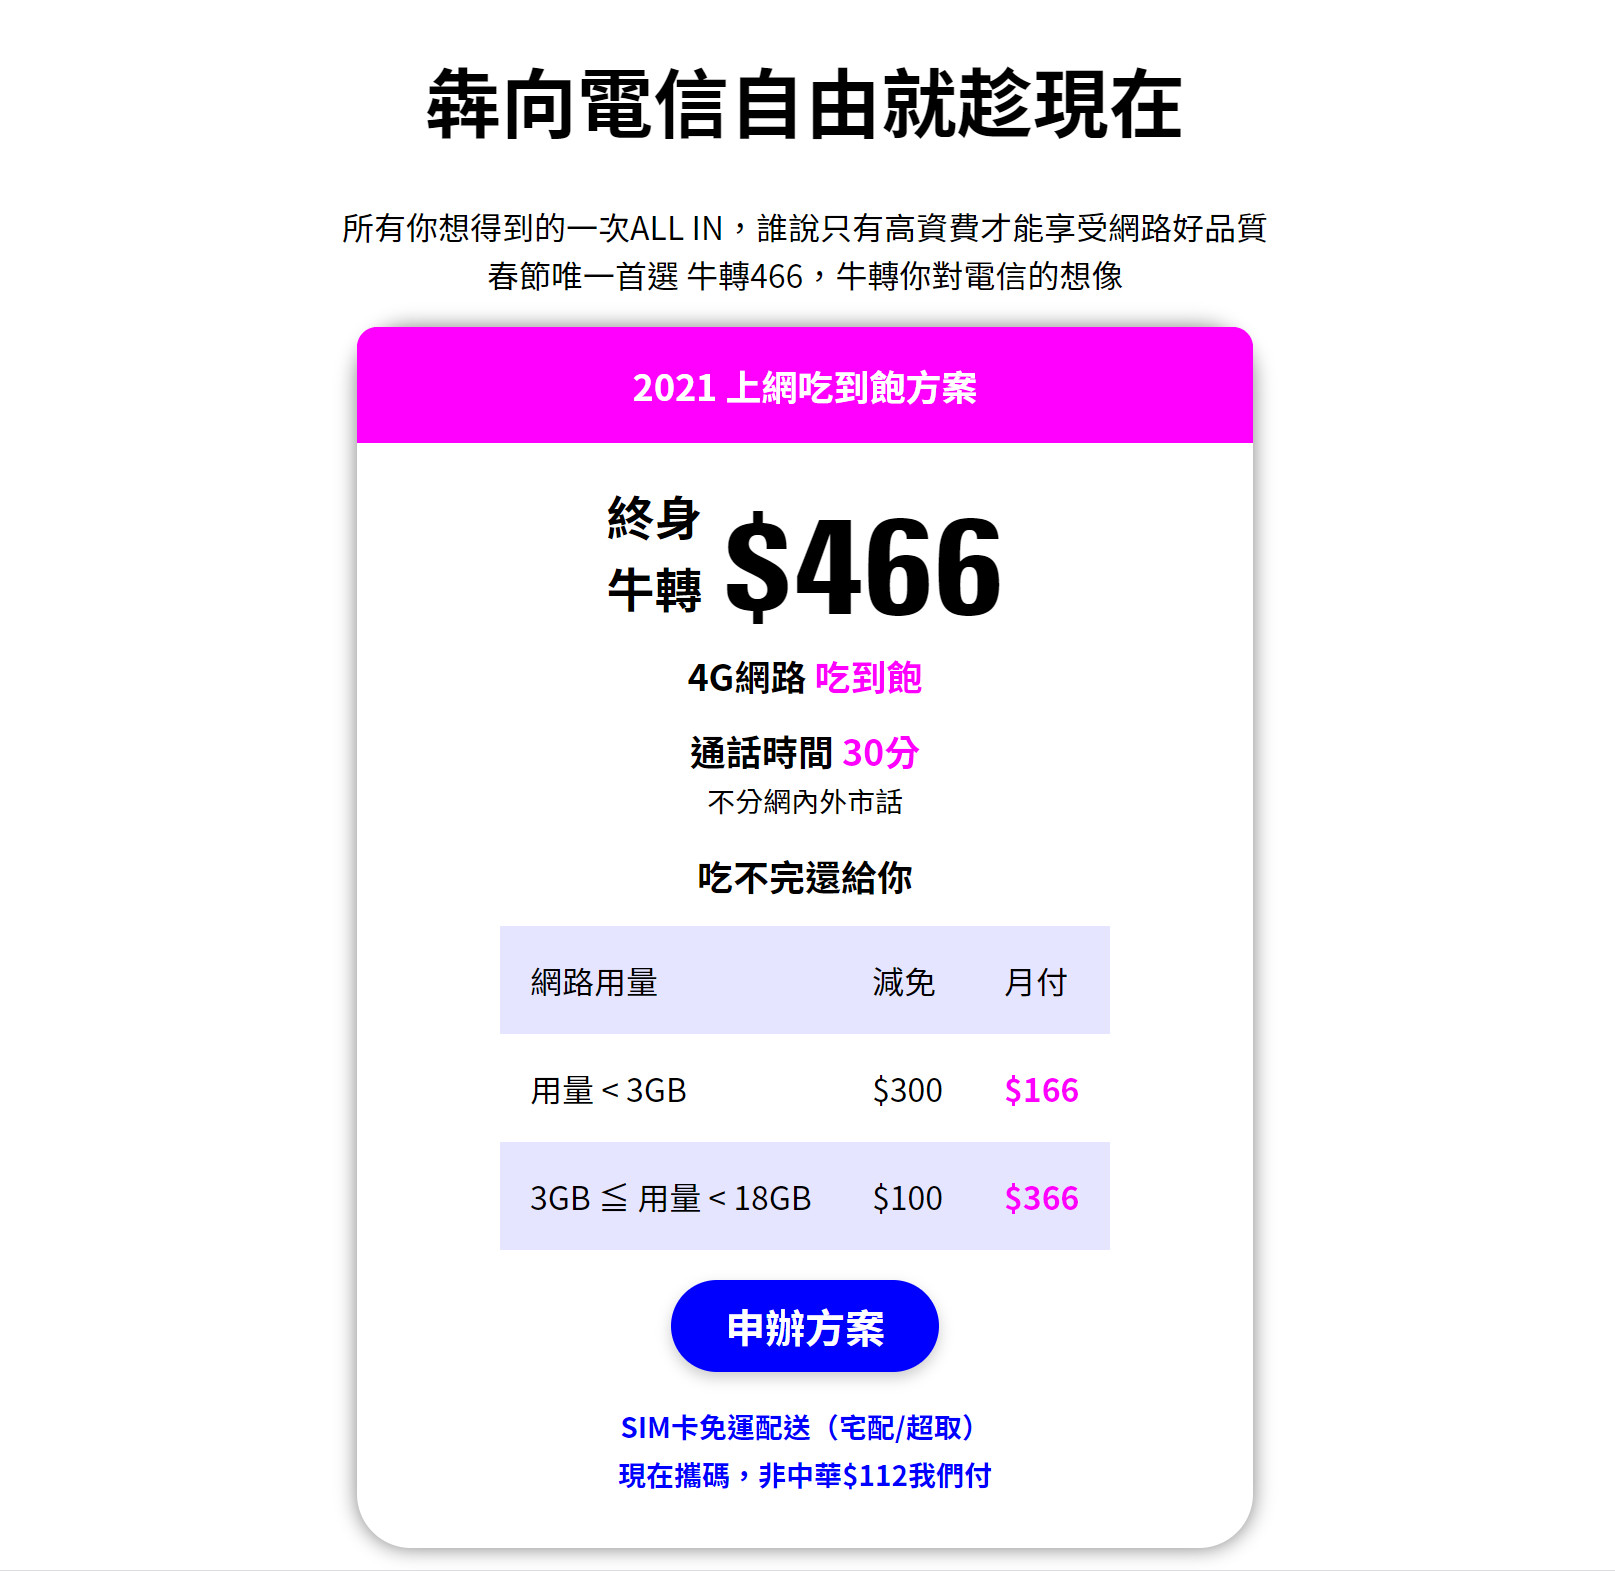 【無框行動】新春專案，中華電信大4G網路吃到飽466元，低流量只要166元!超適合搭配台灣之星雙11專案。 - 無框行動優惠 - 敗家達人推薦